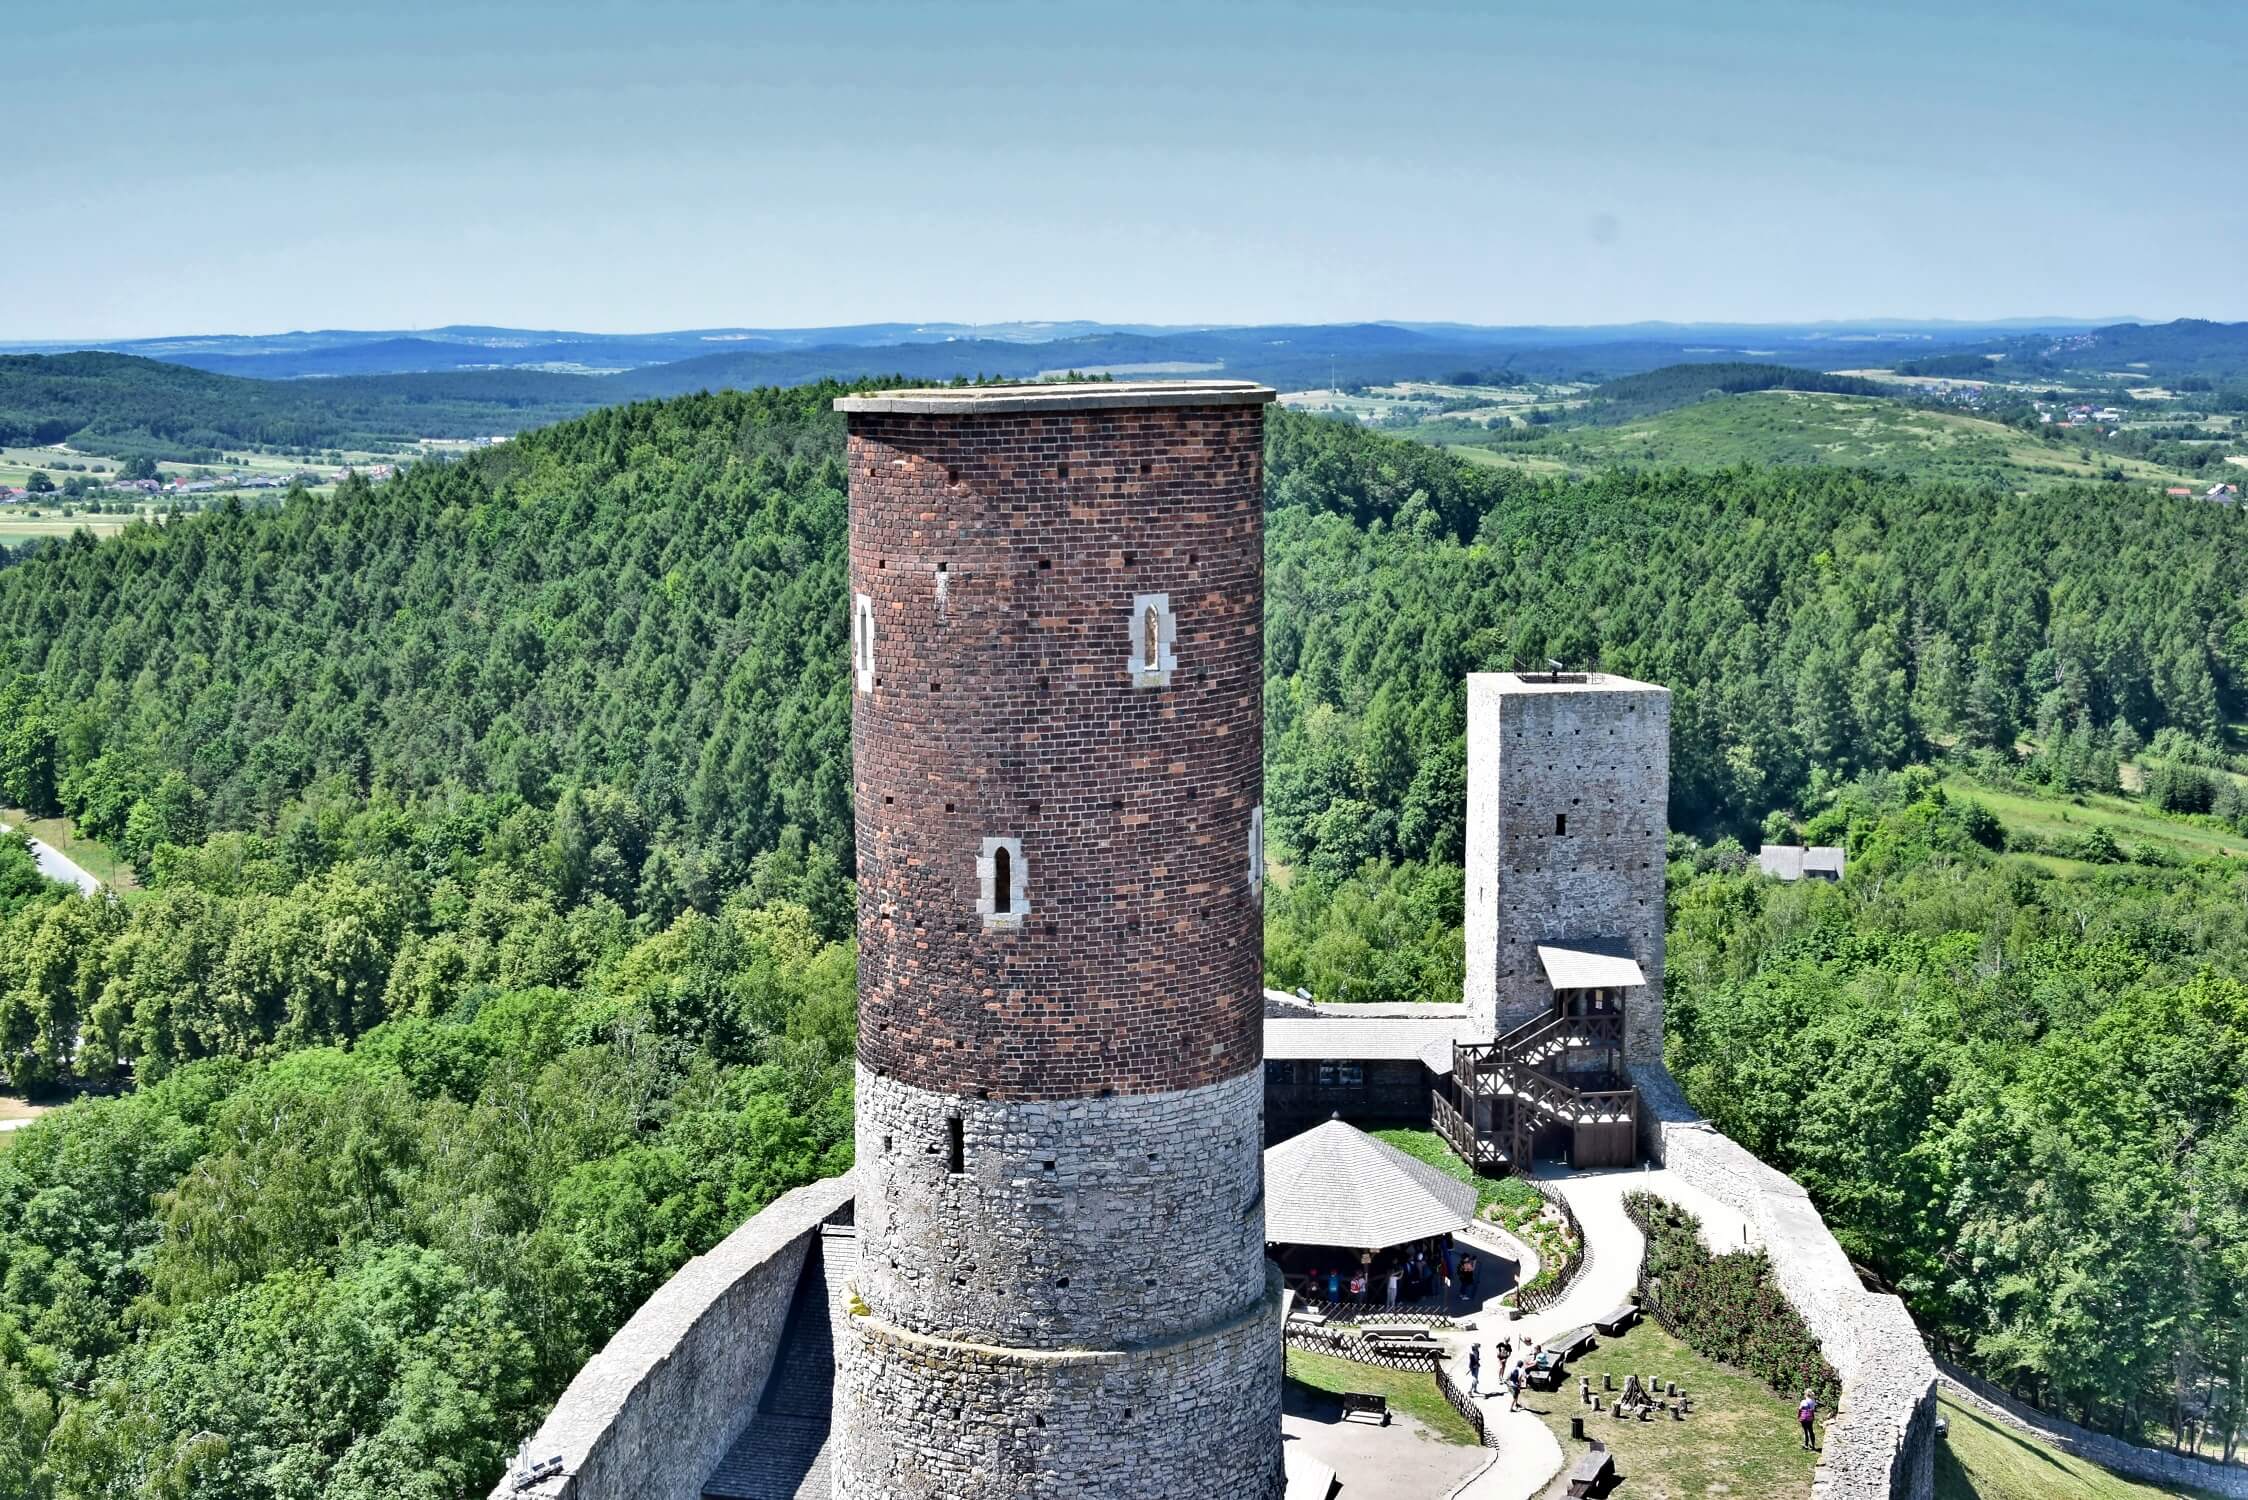 zamek checiny 2018 14 - Zamek w Chęcinach - dlaczego warto go odwiedzić?